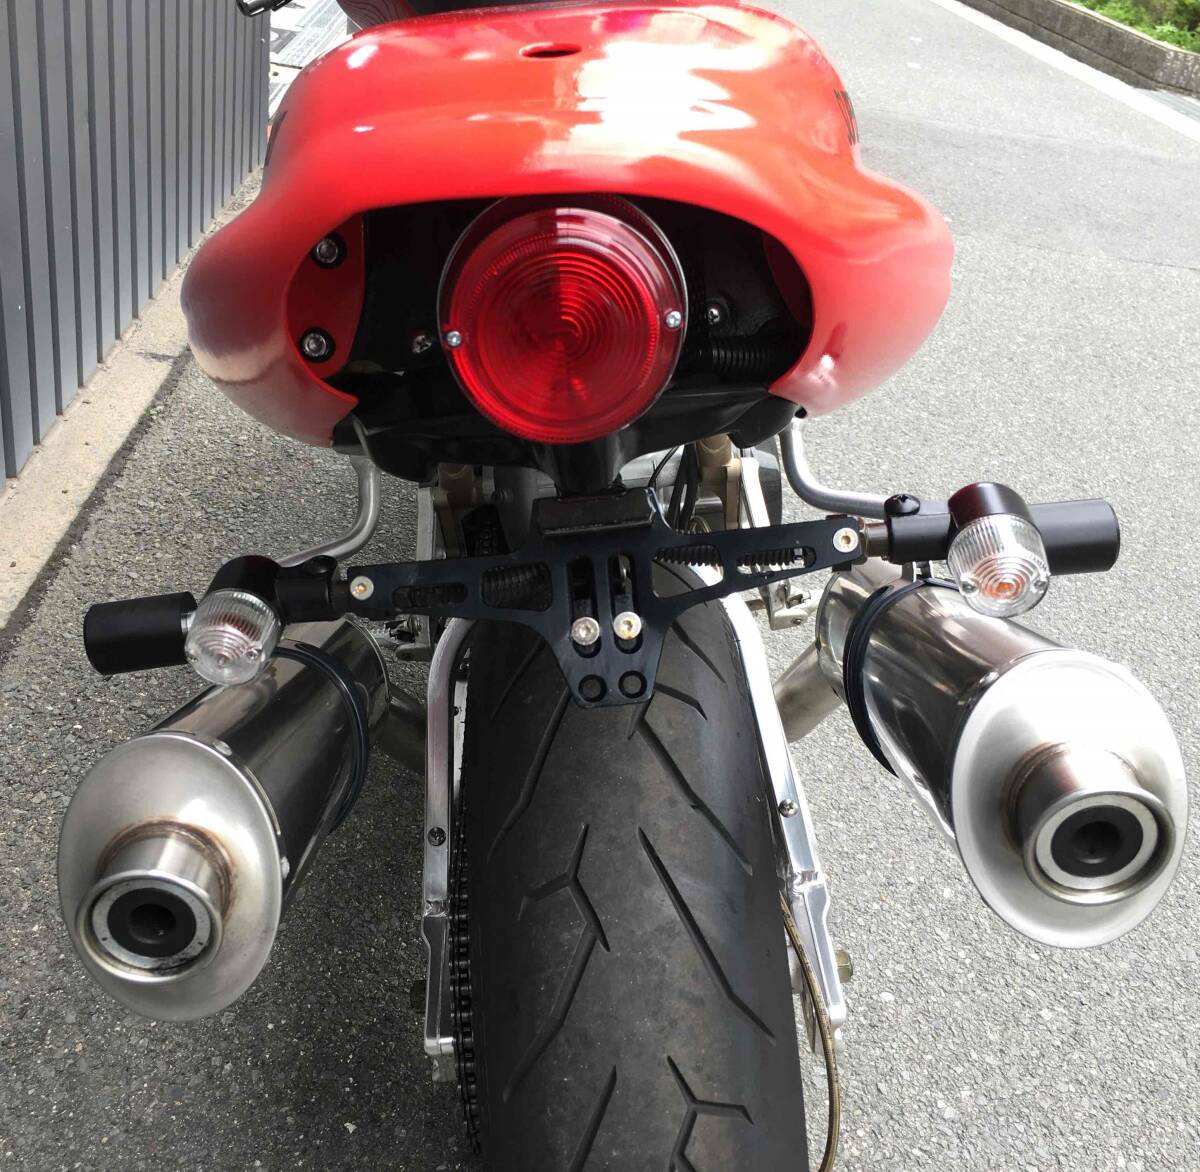  Osaka Ducati SS900 задняя подвеска Ohlins Cafe стиль custom мотоцикл скупка, покупка в обмен на старую модель с доплатой, бесплатный ликвидация OK( осмотр ) Monstar 900SS S4 ST2